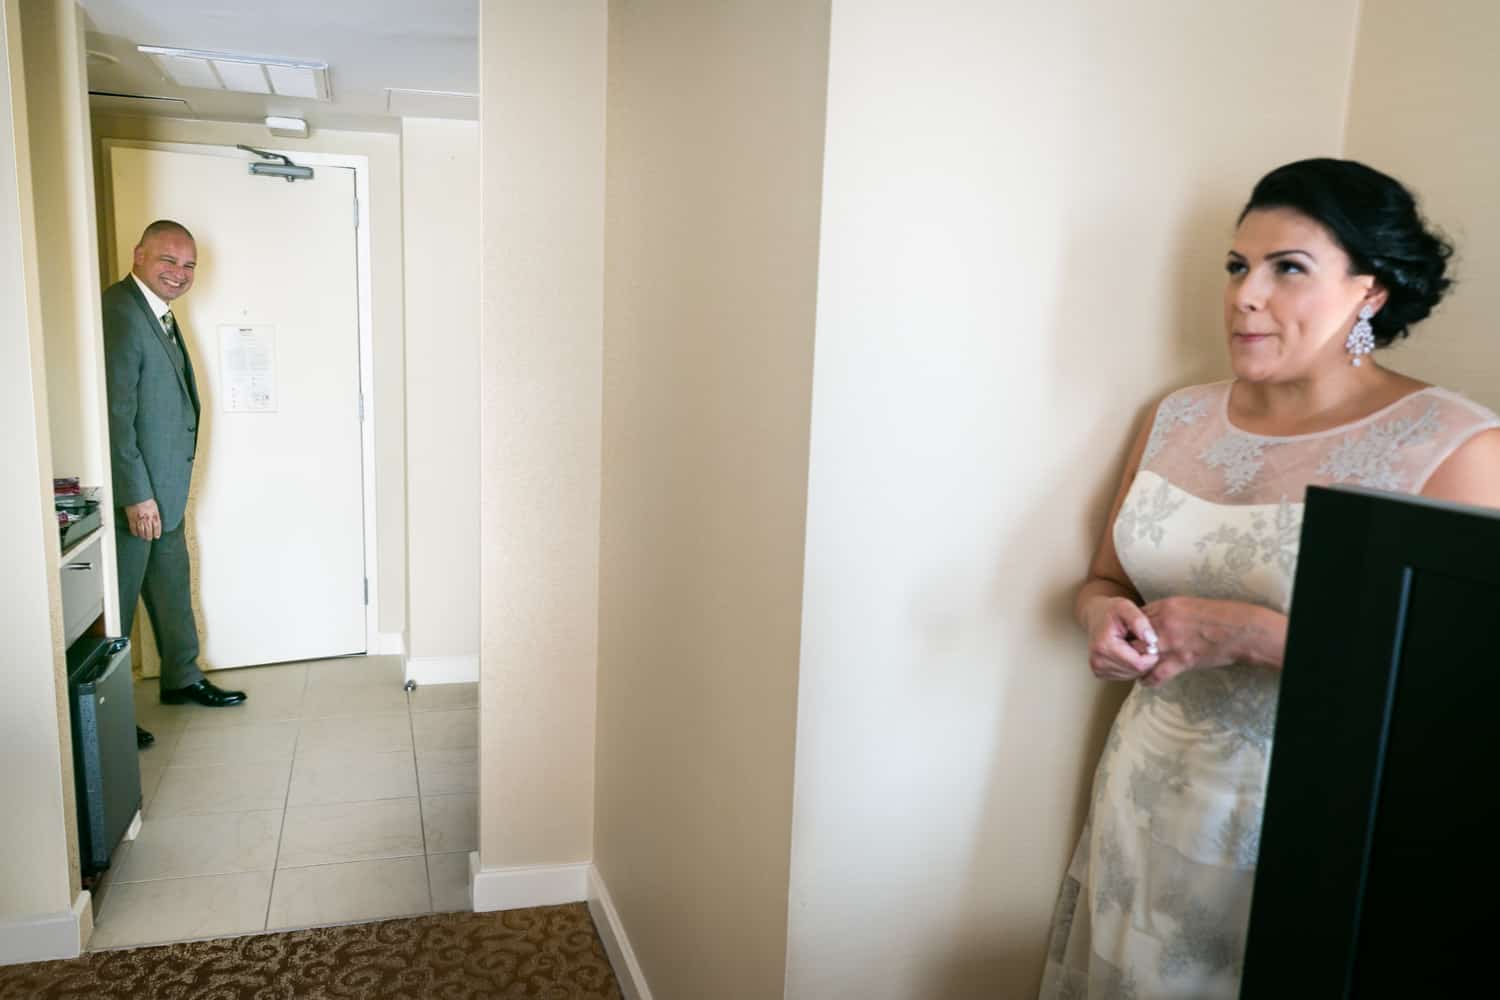 Bride hiding in corner of hotel room while groom walks in door